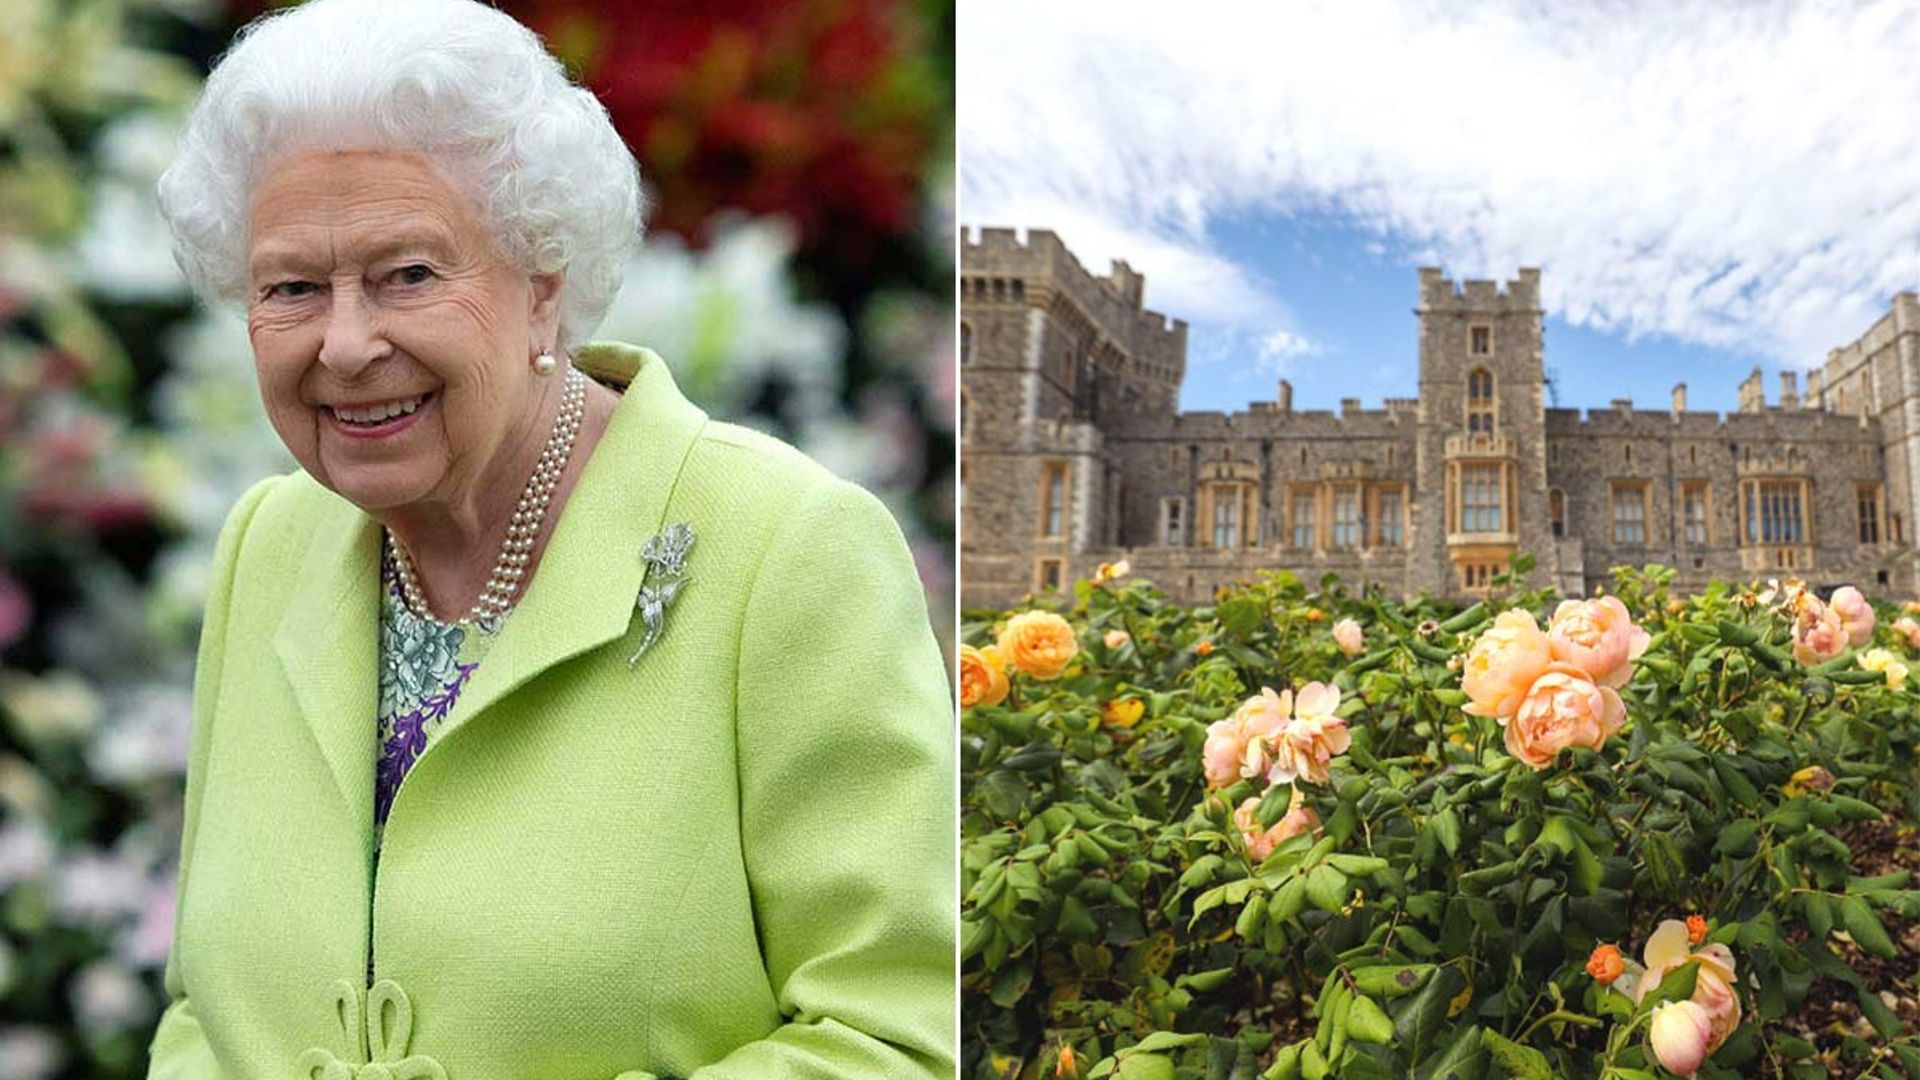 The Queen's garden transformation photos divide royal fans